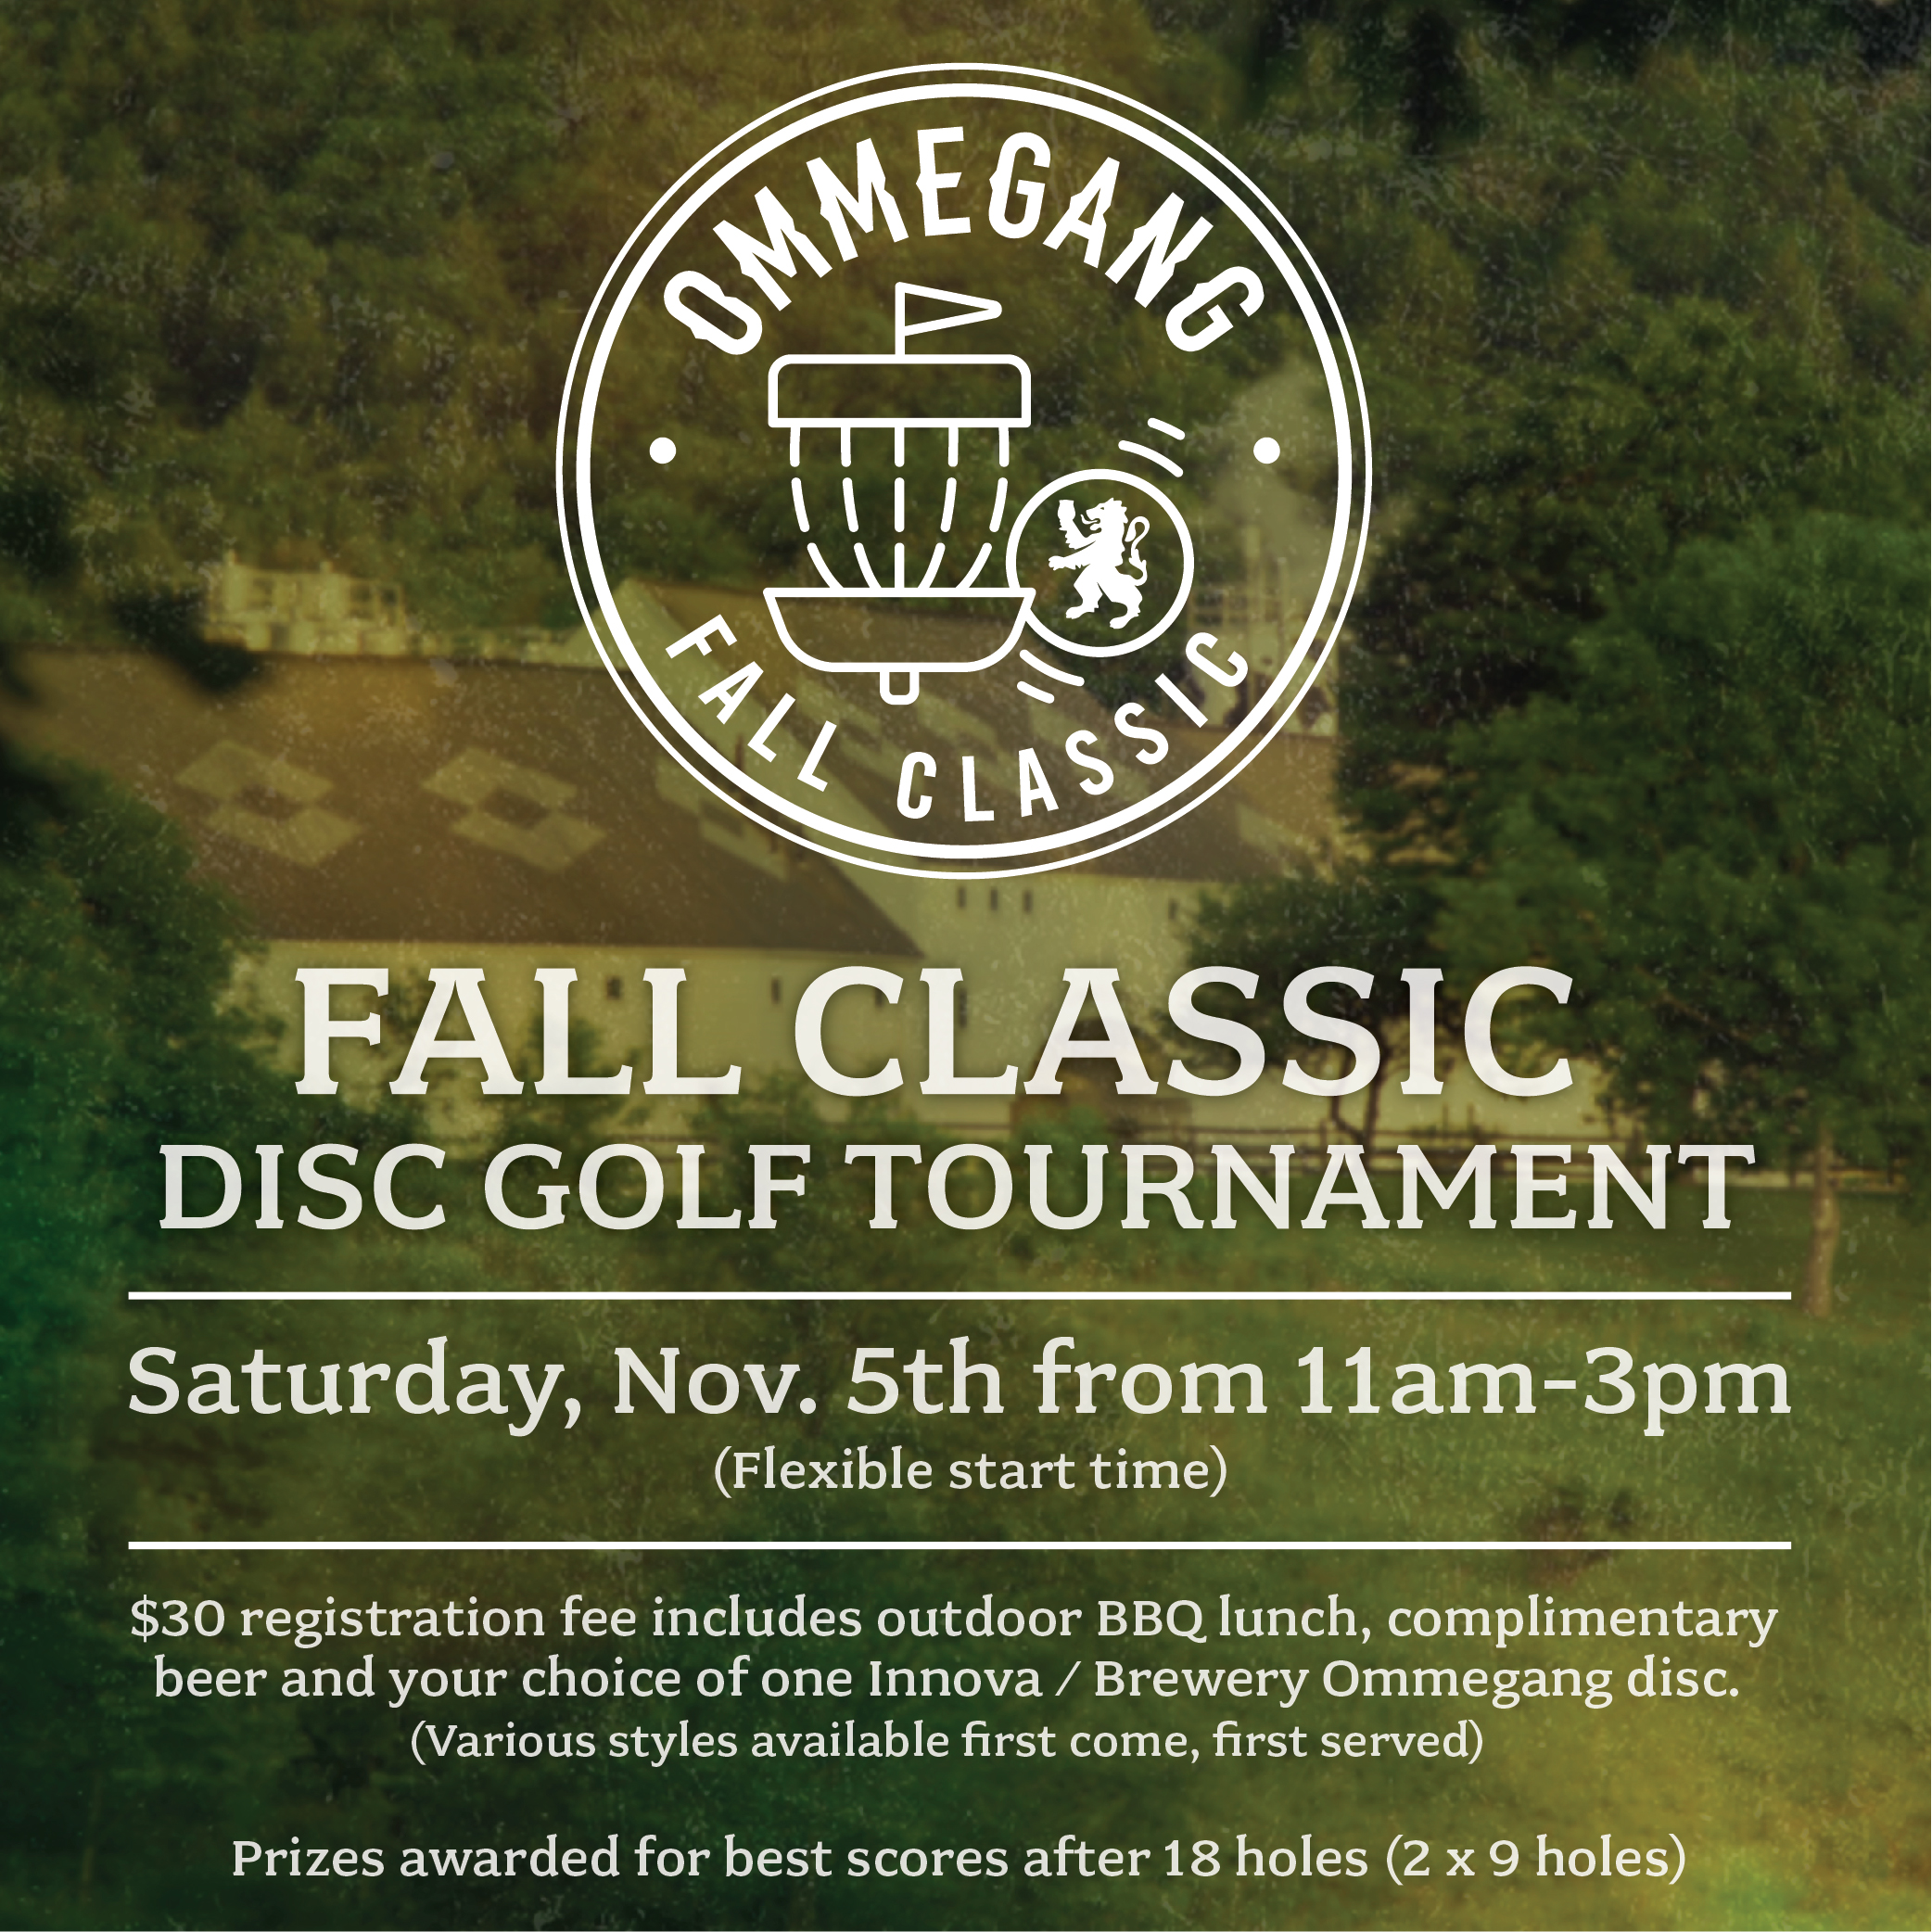 Fall Classic - Disc Golf Tournament